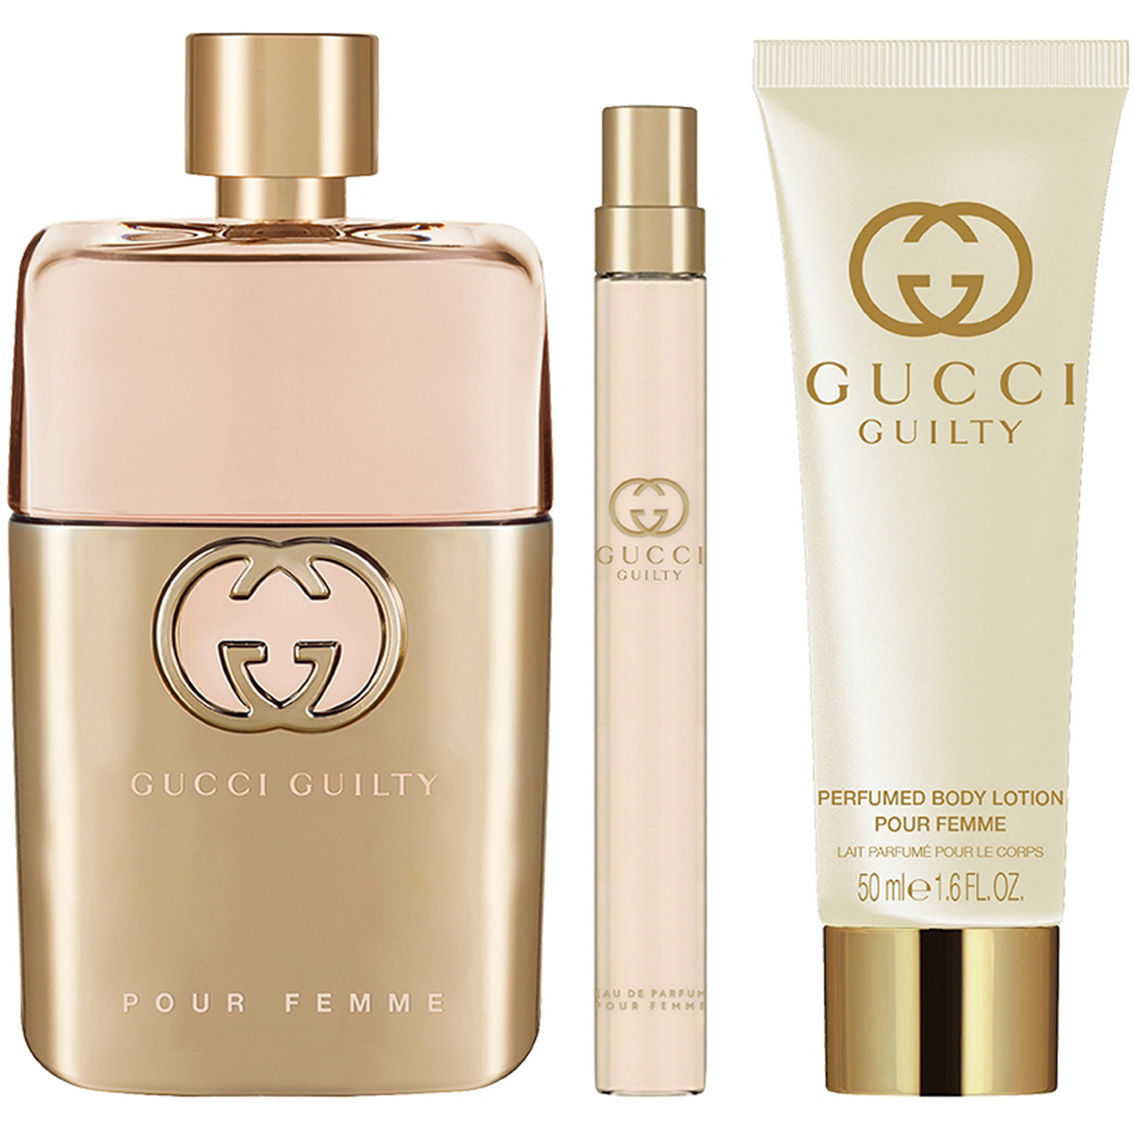 Gucci Guilty Pour Femme Eau de Parfum 3 pc. Gift Set - Image 2 of 2